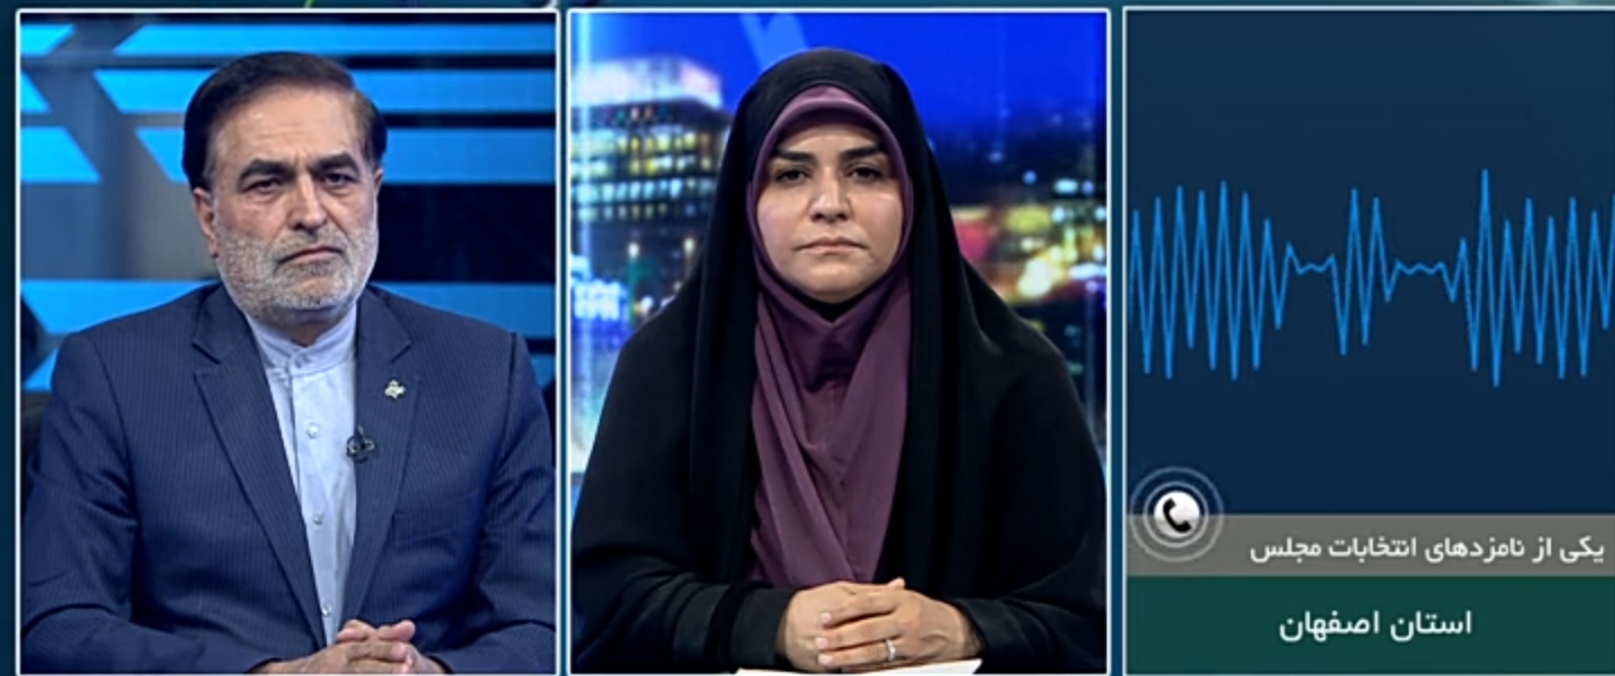 افتتاح کانال های تلویزیونی ۲۶ مرکز صدا و سیما برای تبلیغات انتخابات